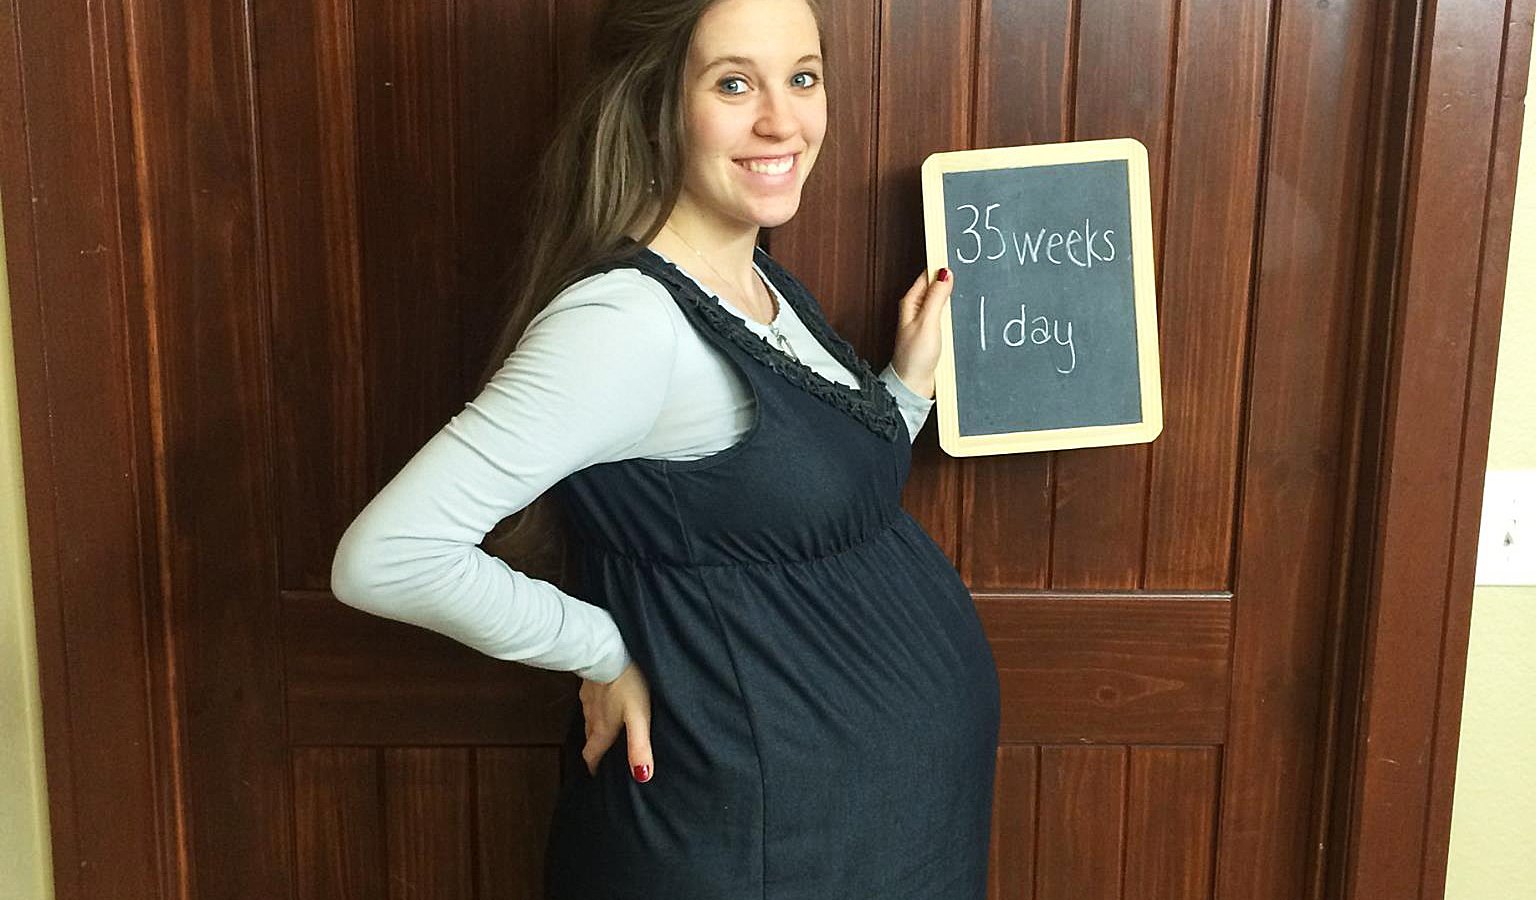 Jill Duggar at 35 weeks and 1 day pregnant